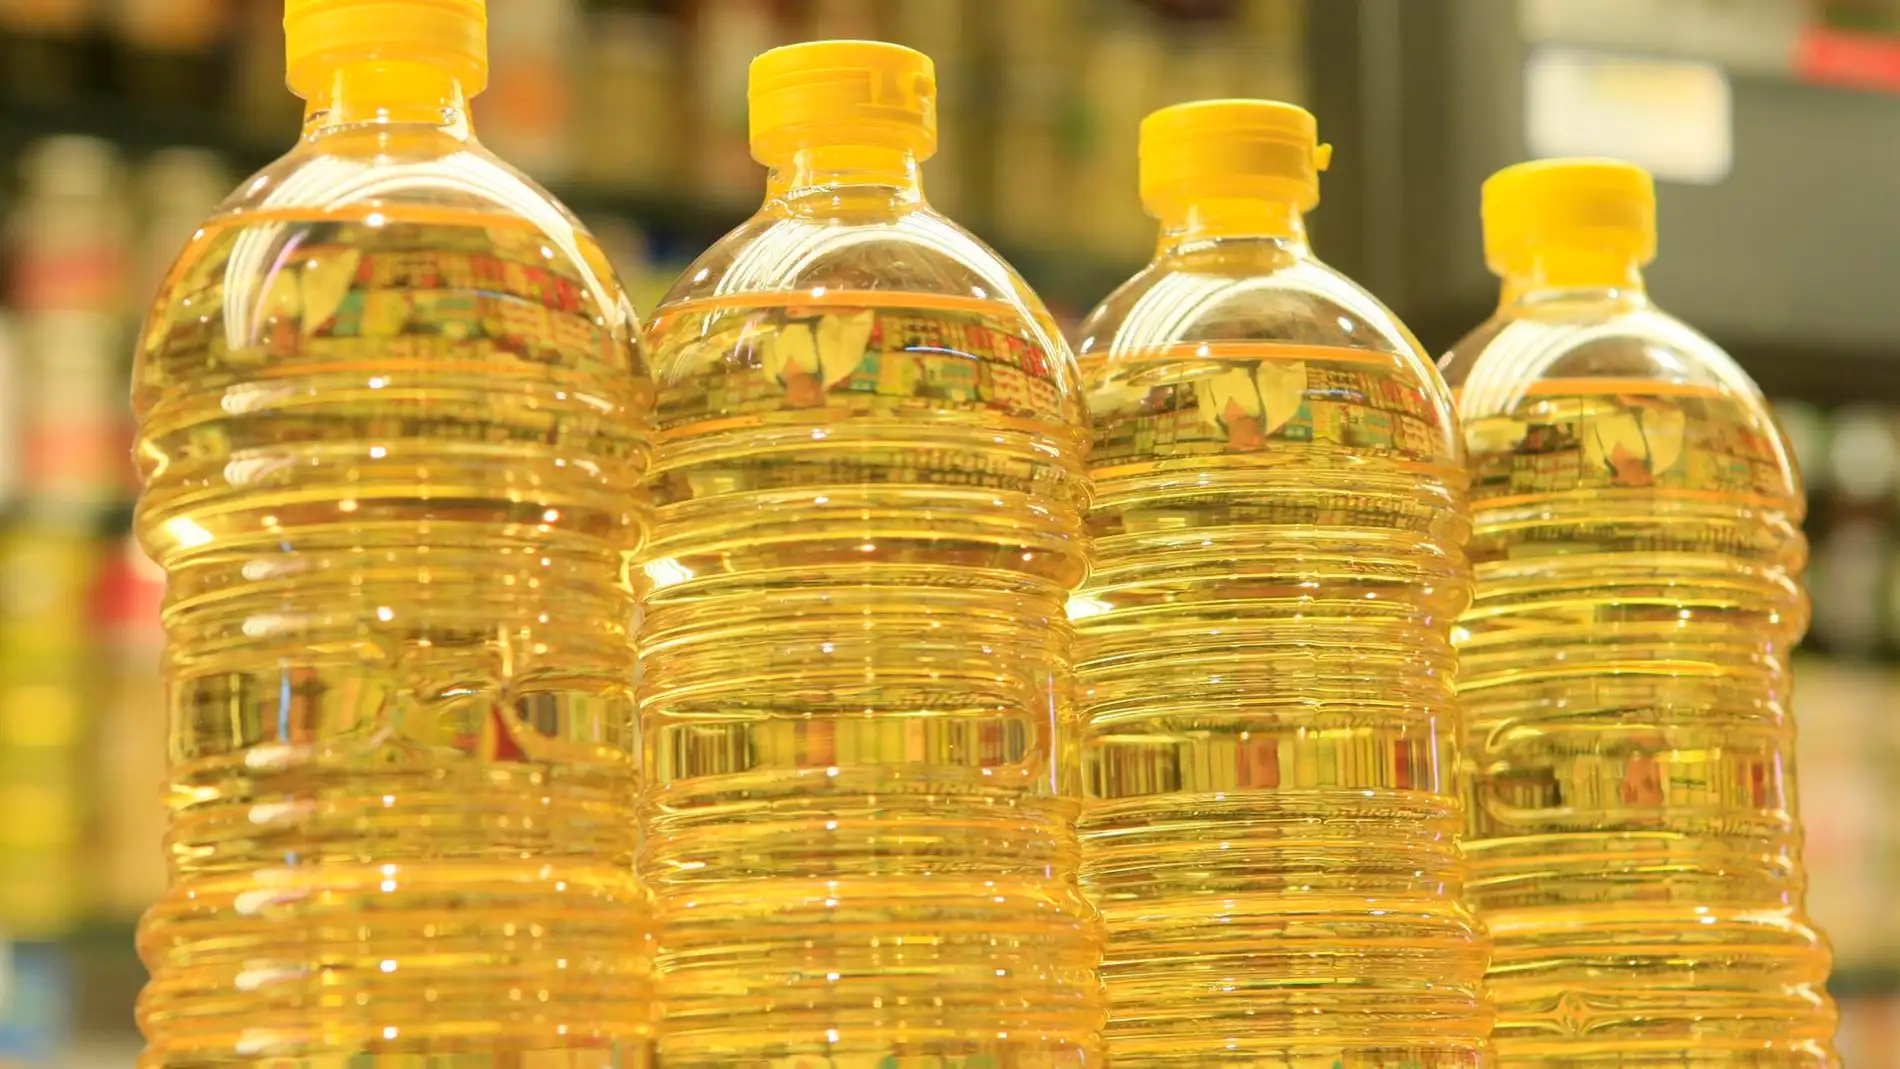 Los supermercados racionan la venta de aceite de girasol para evitar el desabastecimiento por la guerra en Ucrania